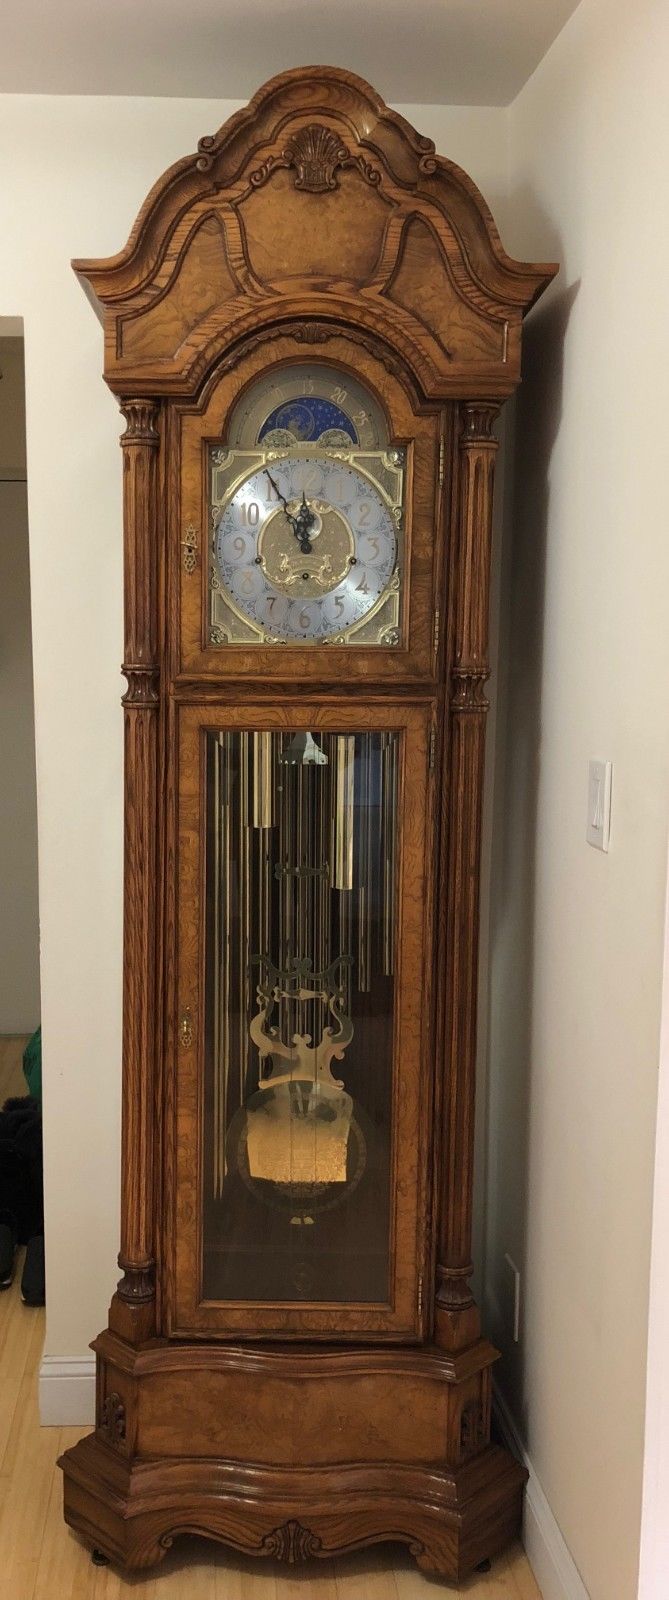 Charles R. Sligh Grandfather Clock, Model 30, Centennial Special Edition